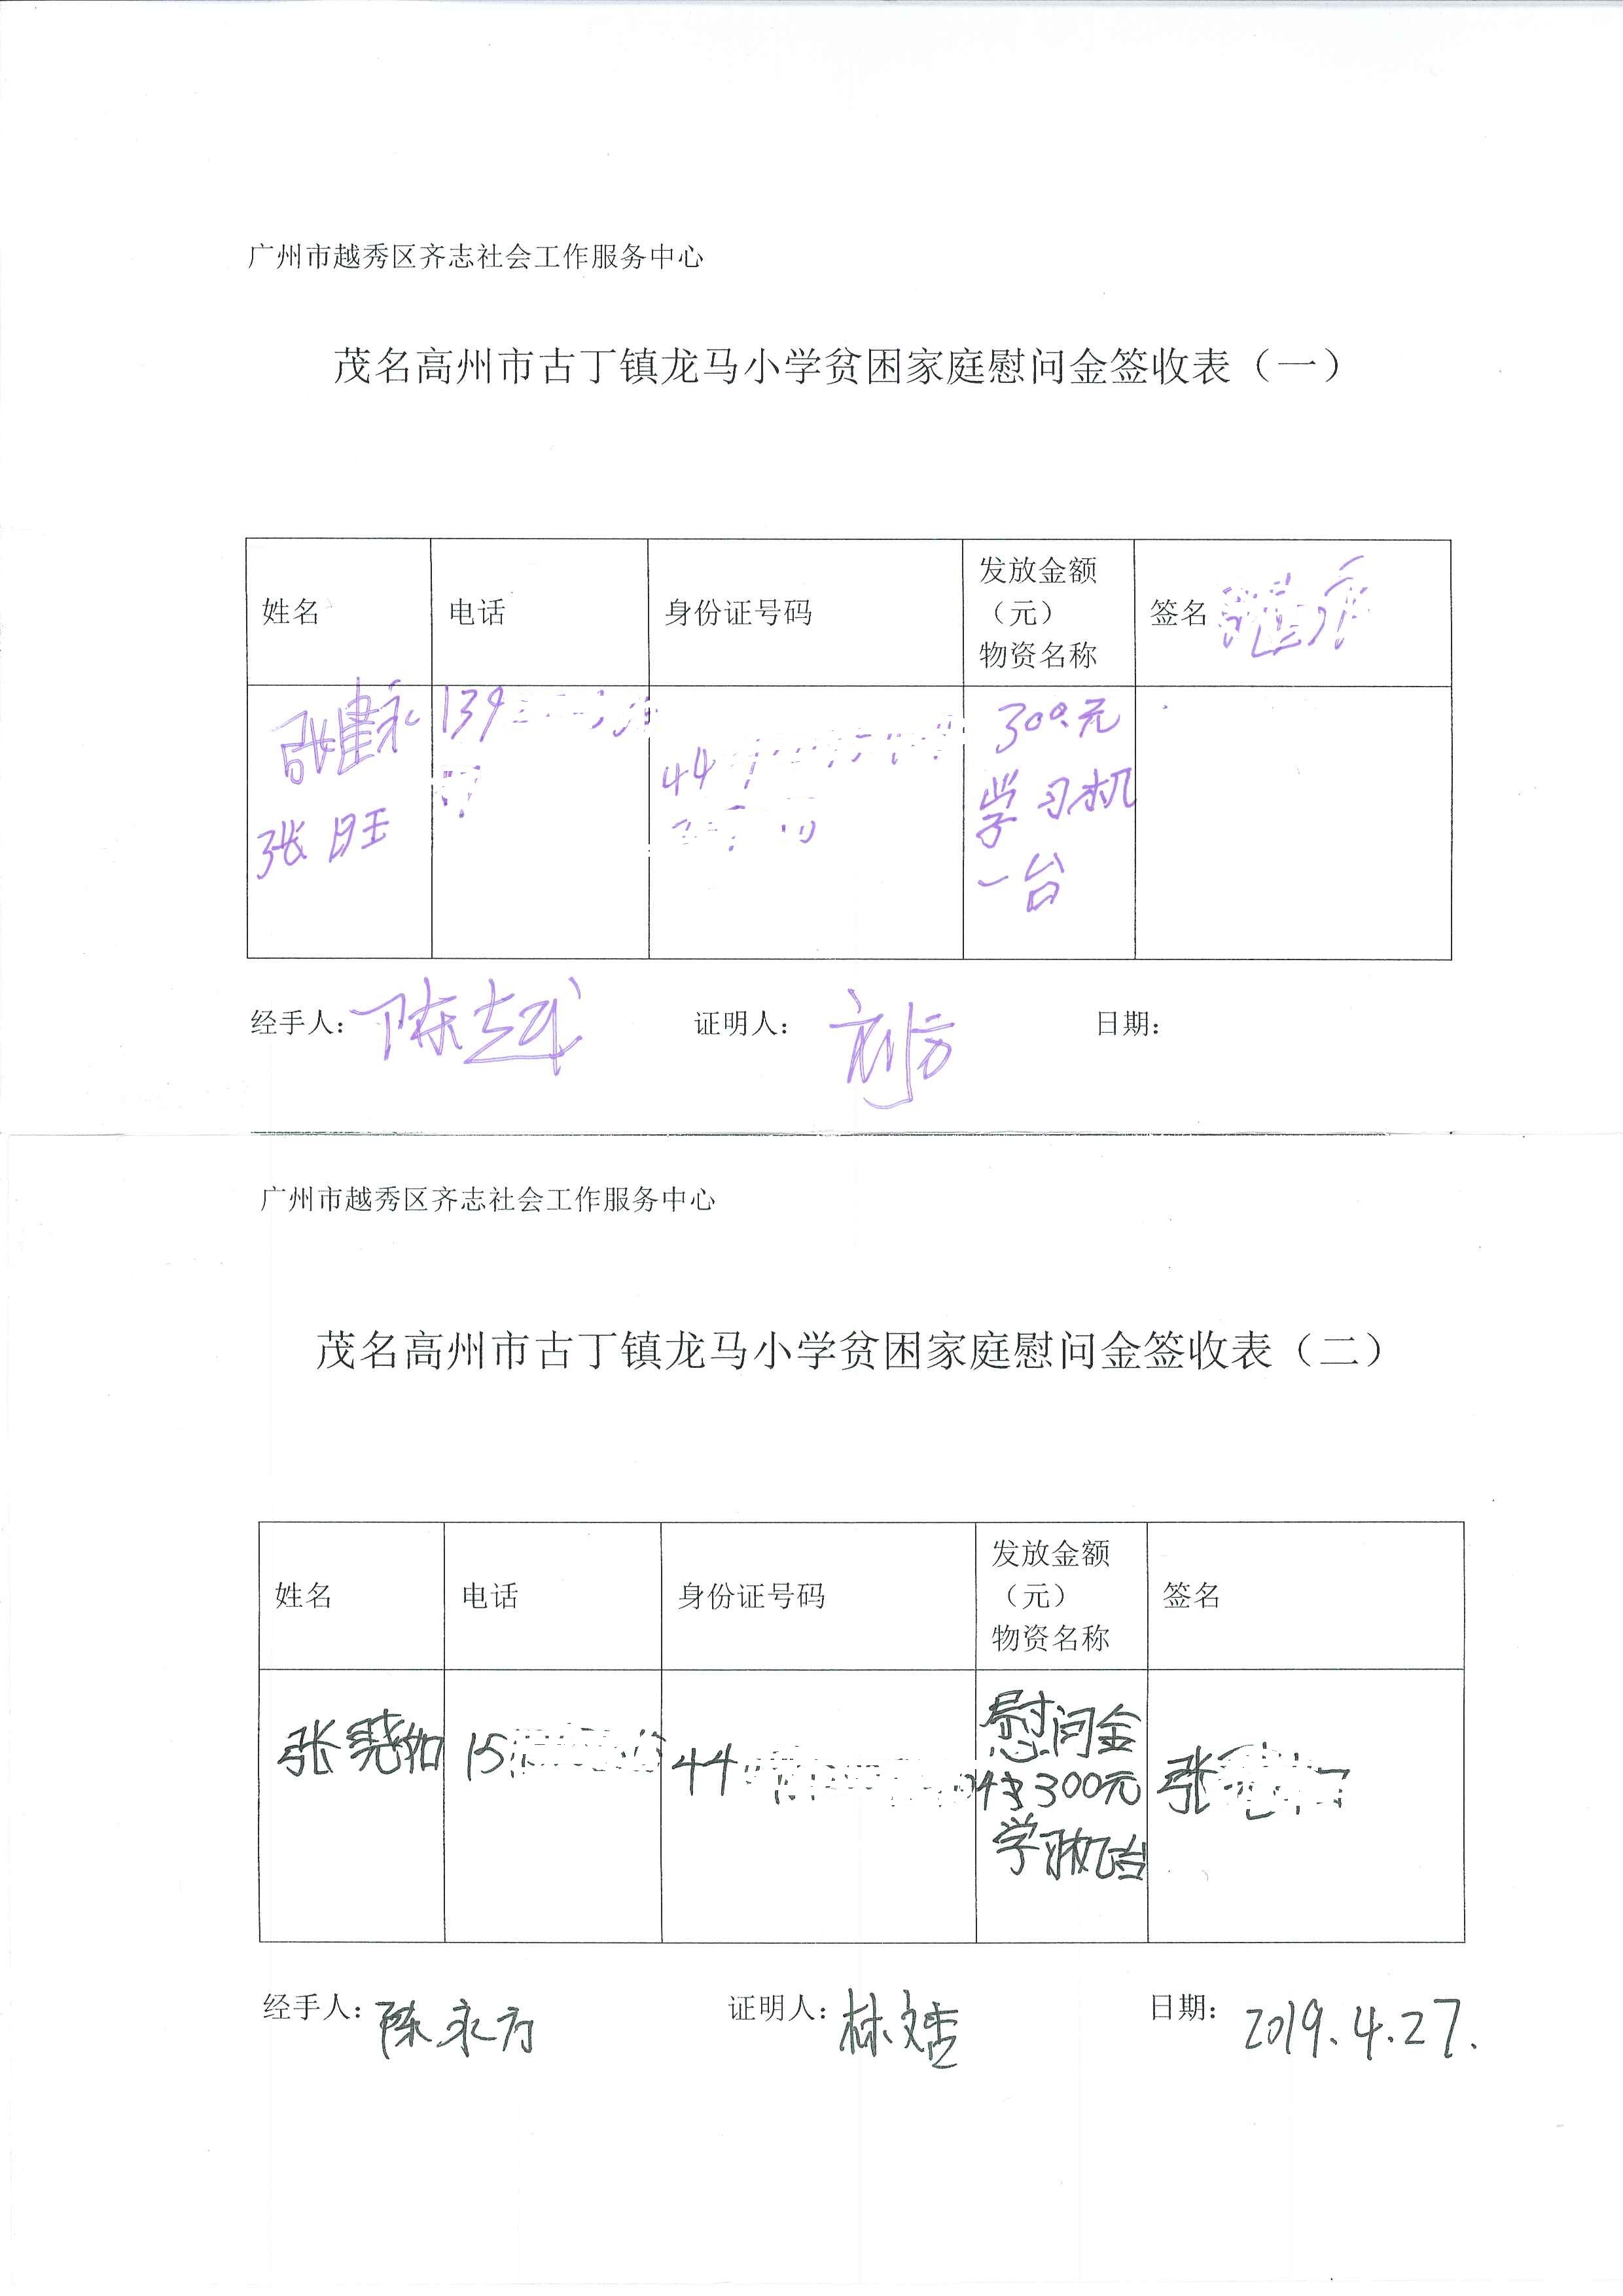 龙马小学慰问金及学习机签收单 (1)1.jpg